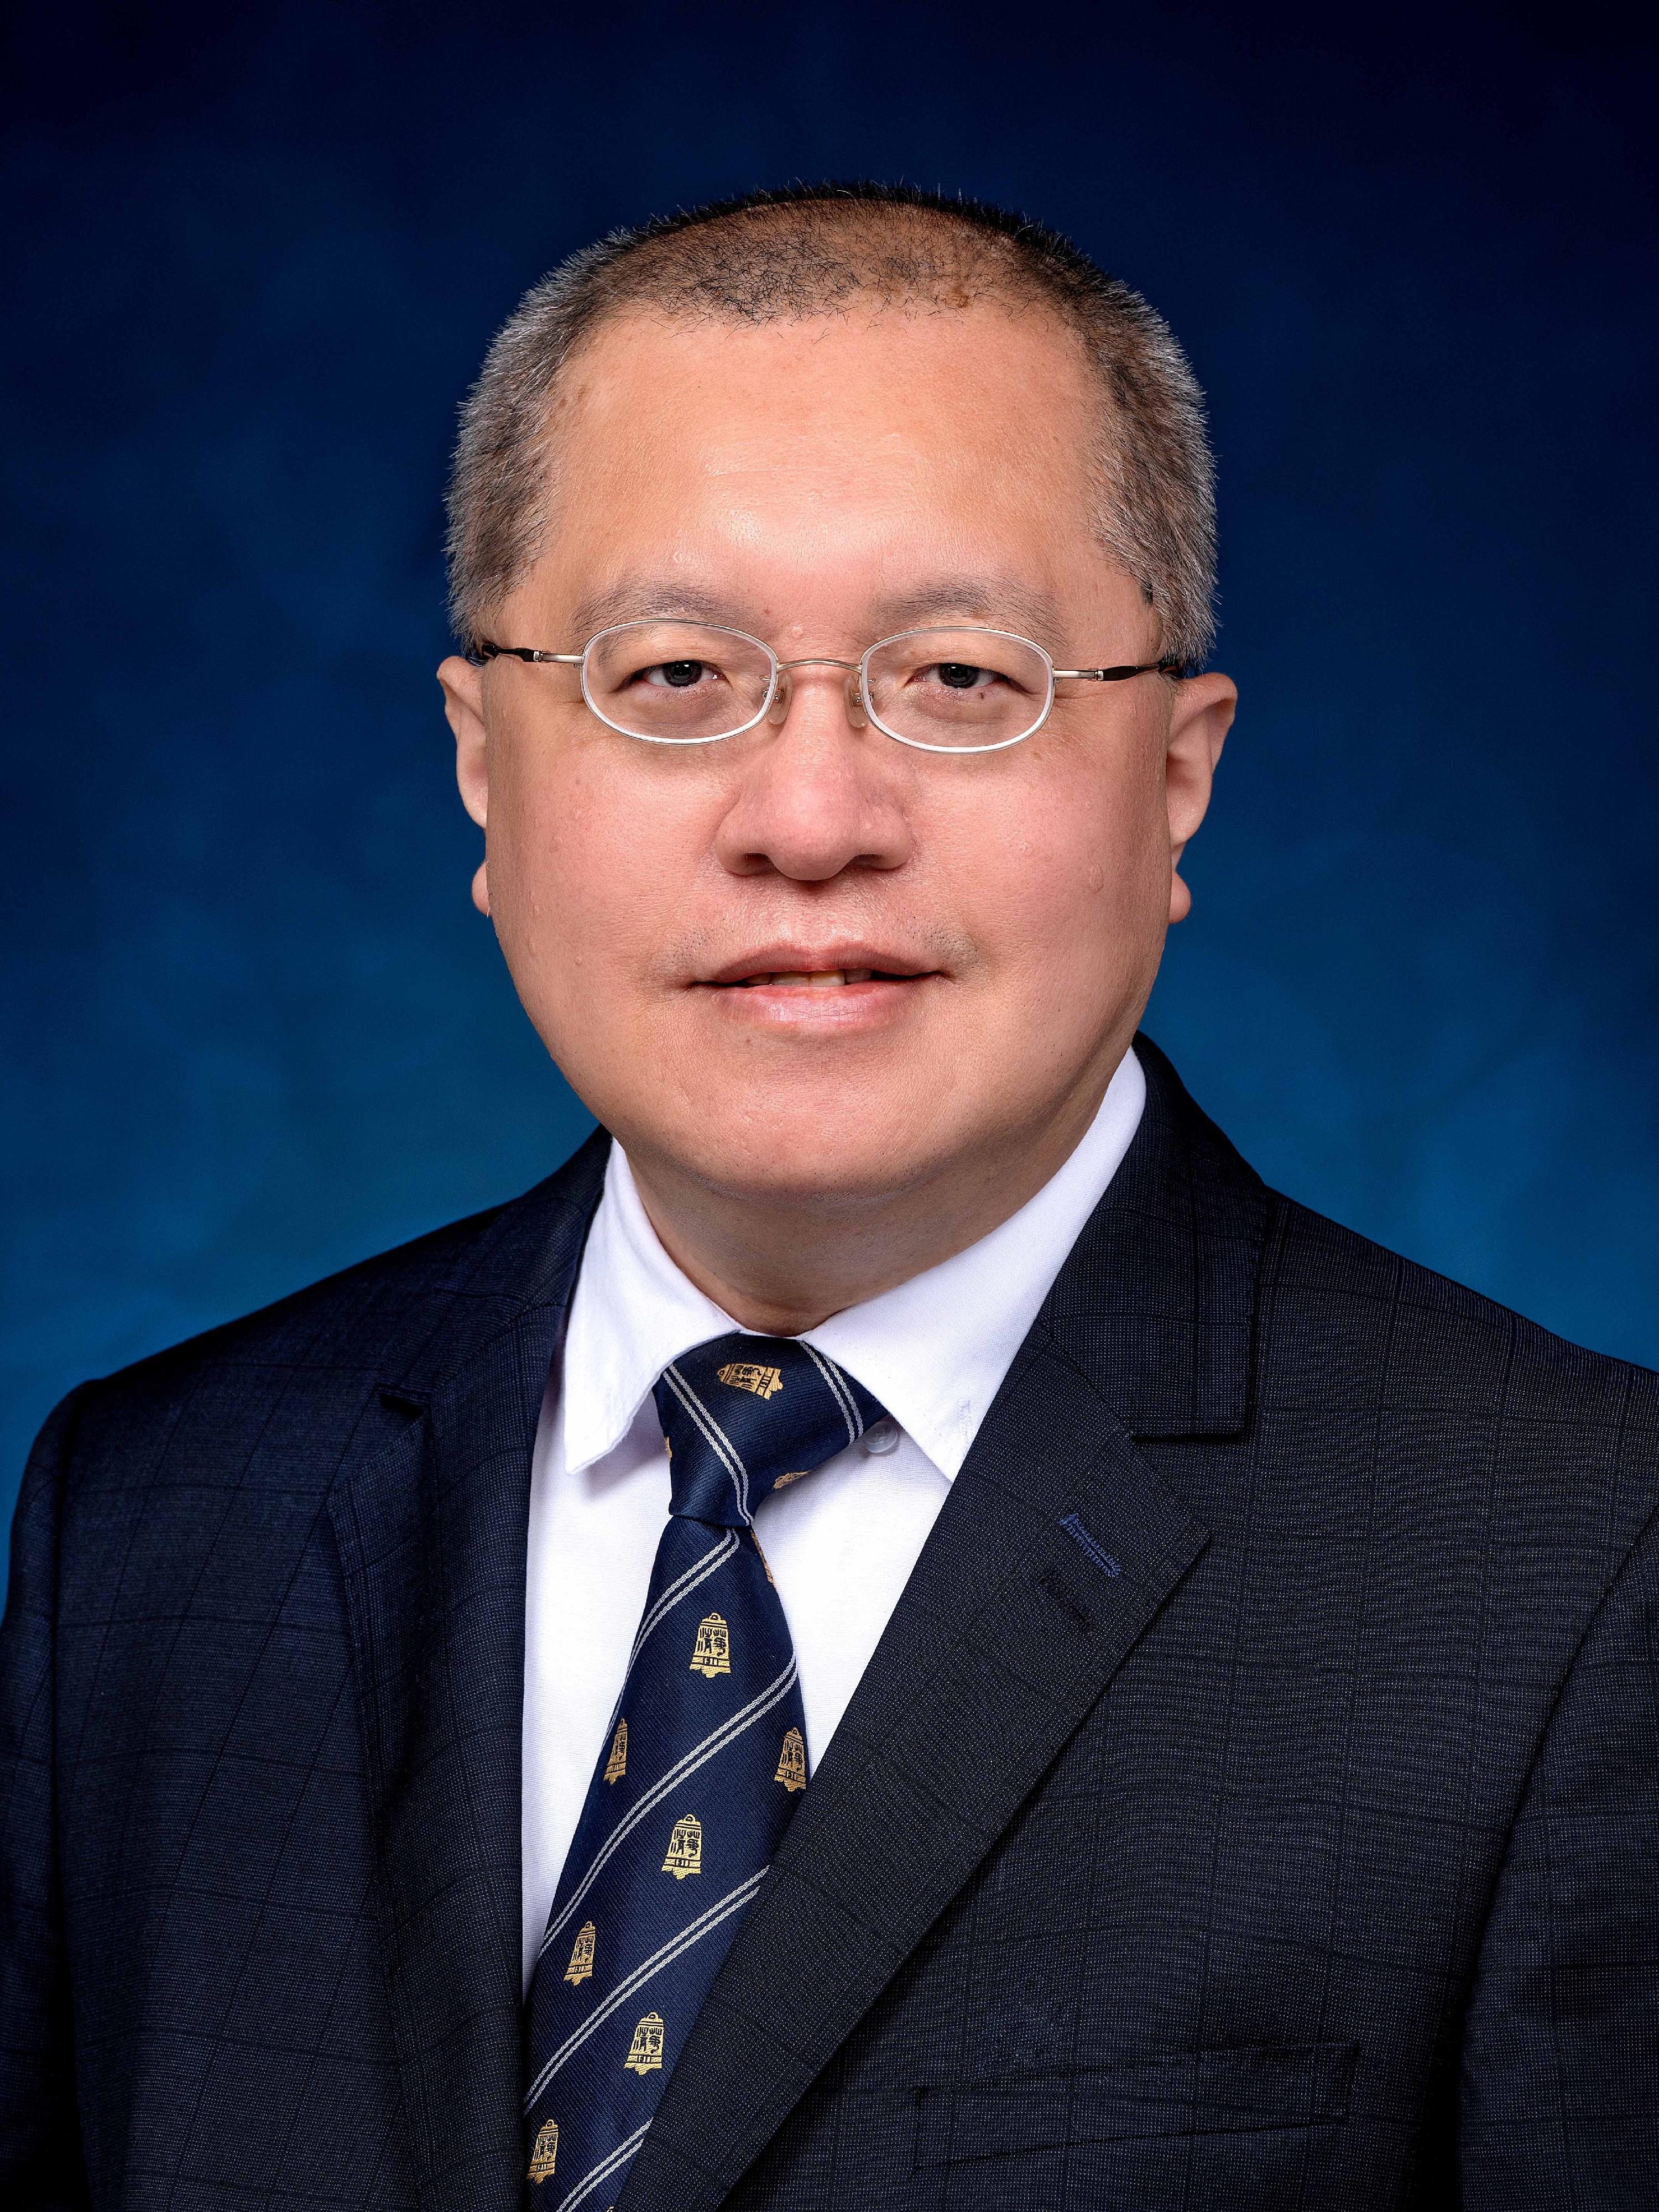 香港天文台助理台长陈栢纬将于二○二三年三月十三日出任香港天文台台长。

